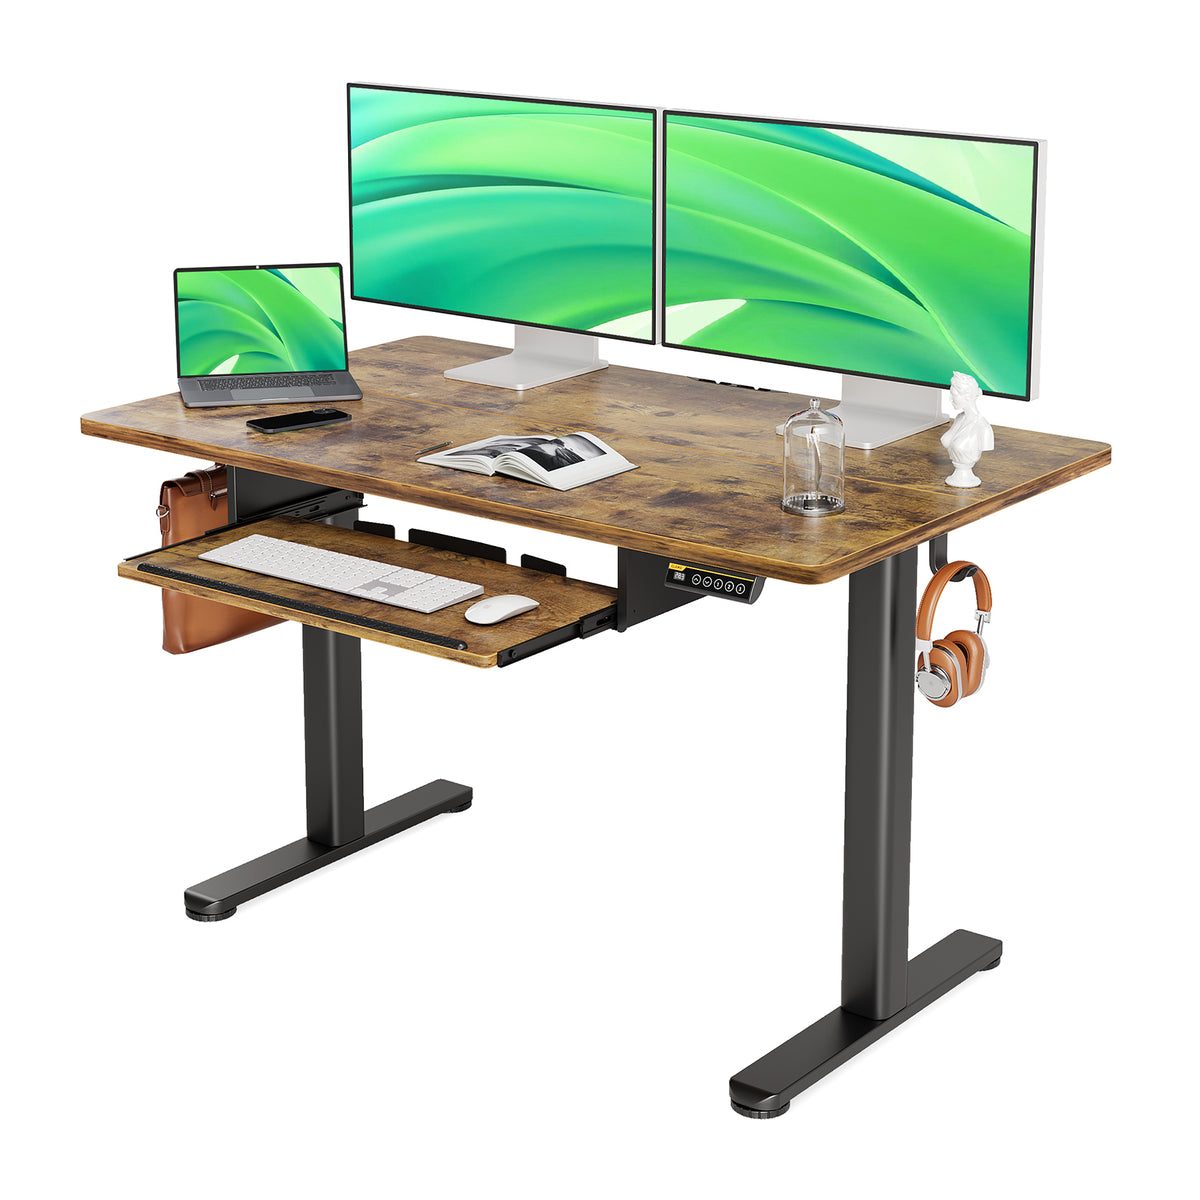 Claiks 站立式办公桌，带键盘托盘，站立式办公桌可调节高度，适合家庭办公室和电脑工作站的升降办公桌，质朴棕色